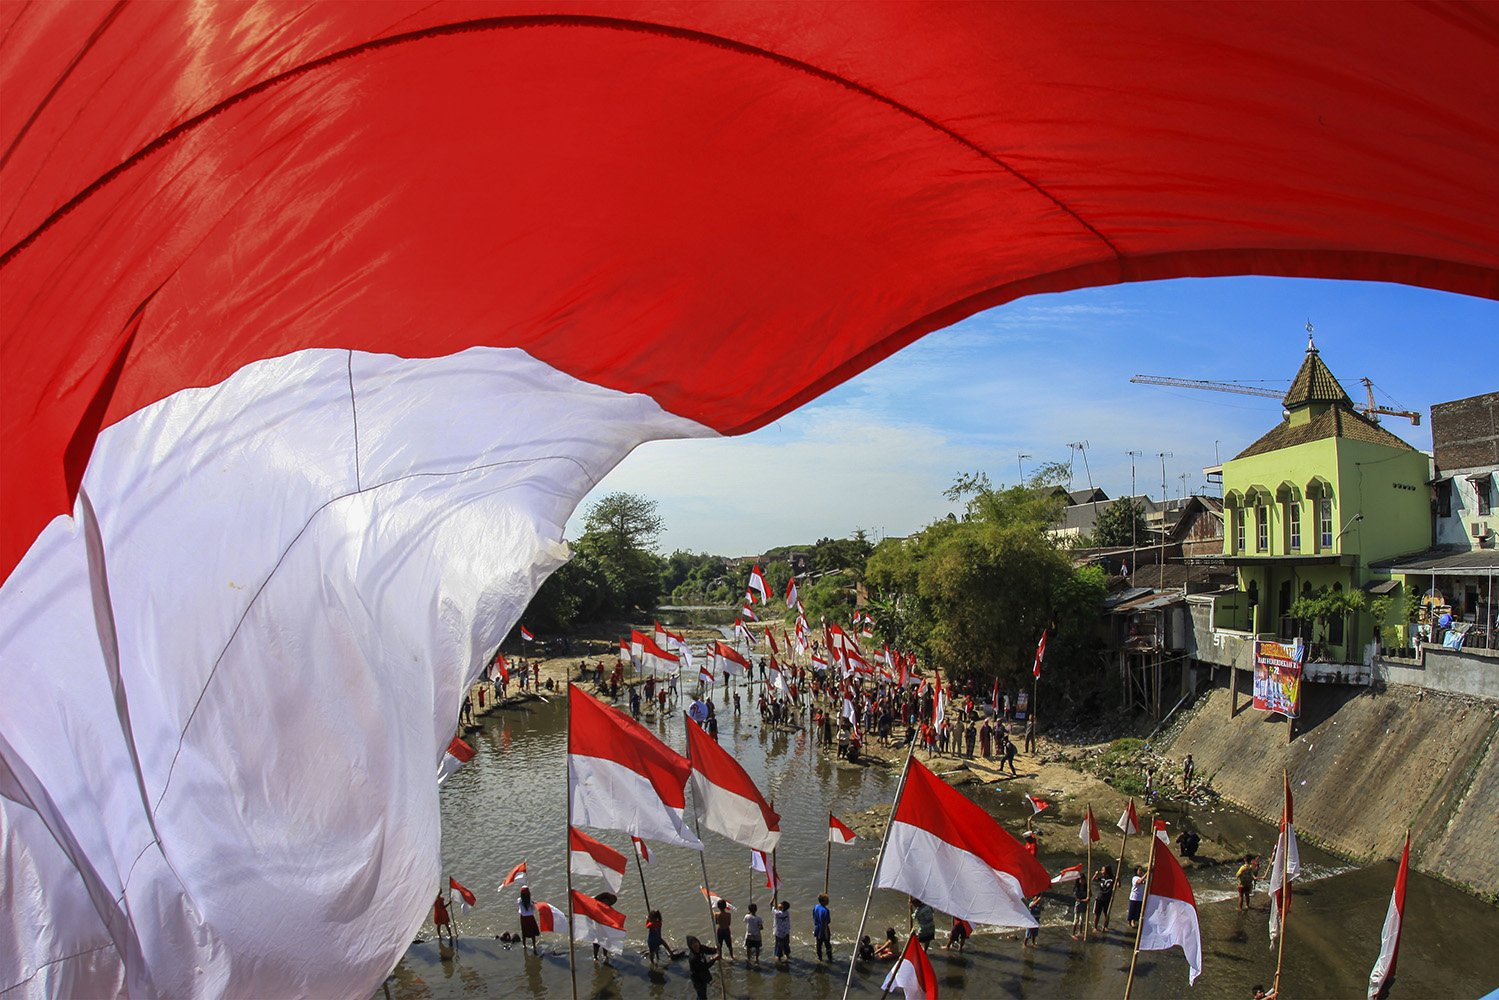 Warga mengikuti upacara bendera di Sungai Kalianyar, Banjarsari, Solo, Jawa Tengah, Kamis (17/8). Kegiatan upacara di sungai tersebut digelar untuk peringatan HUT Ke-72 RI sekaligus sebagai kampanye pelestarian sungai. 